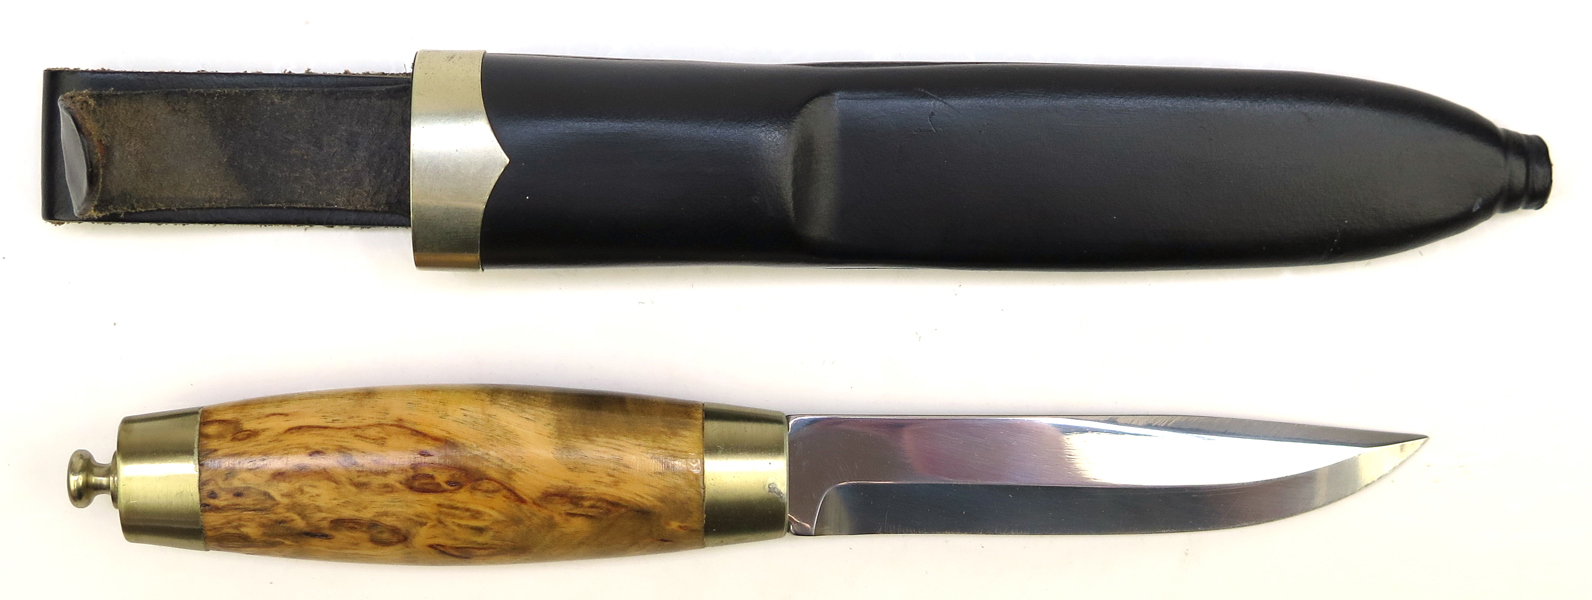 Kniv i balja, Brusletto, total längd 23 cm_28378a_lg.jpeg